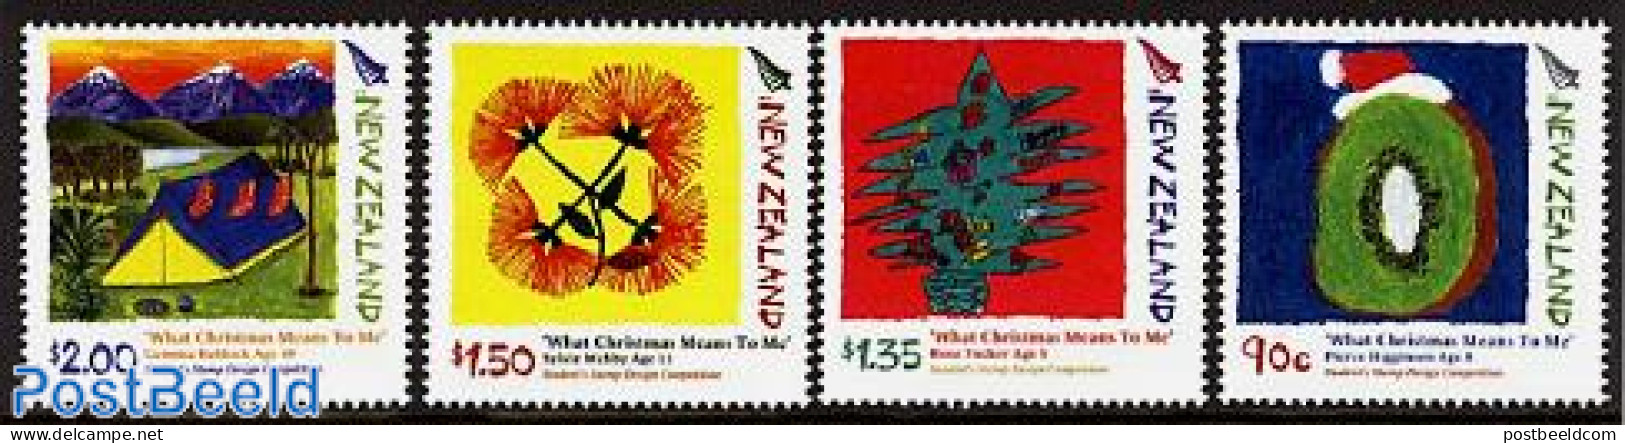 New Zealand 2006 Christmas, Children Stamp Design 4v, Mint NH, Religion - Christmas - Art - Children Drawings - Nuovi